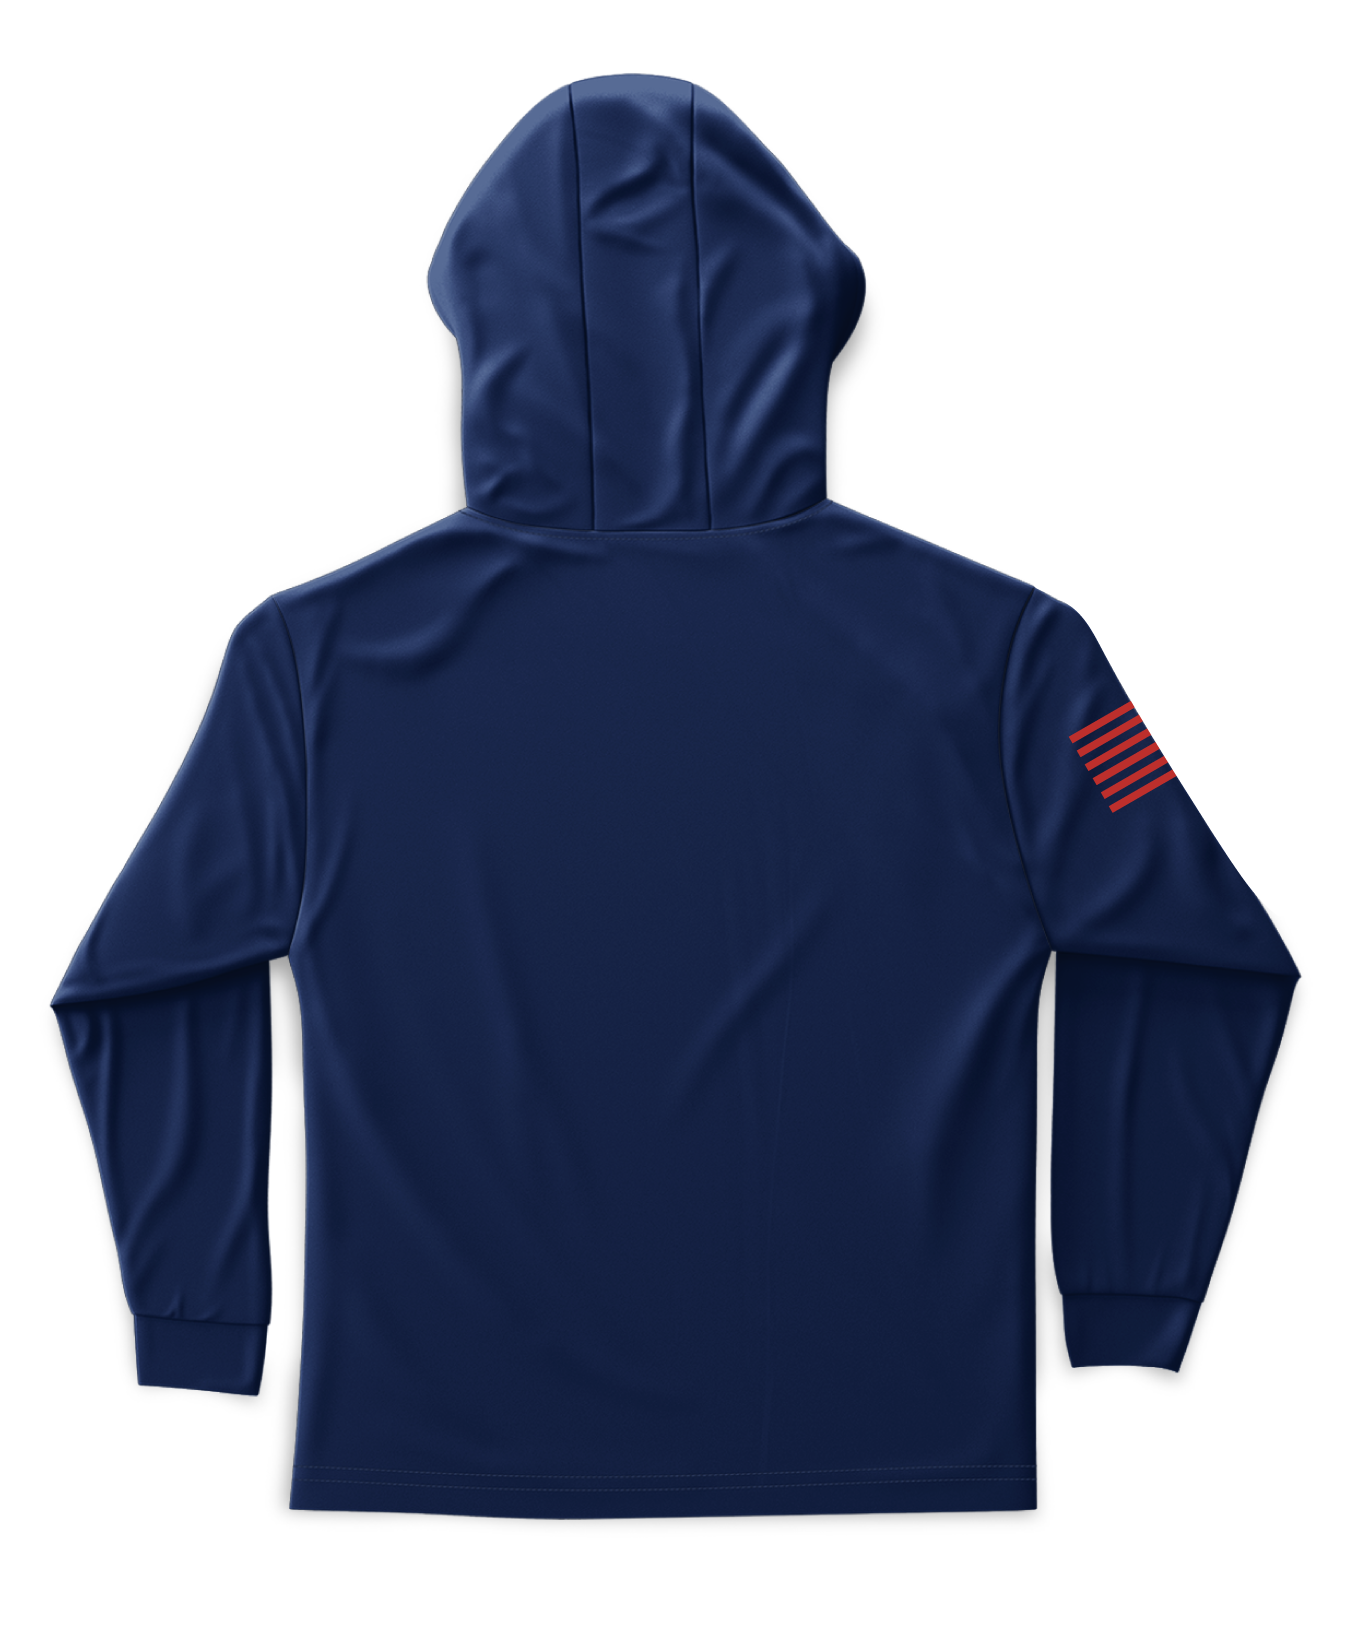 Core Men's Hooded Performance Sweatshirt - Original - Navy/Red